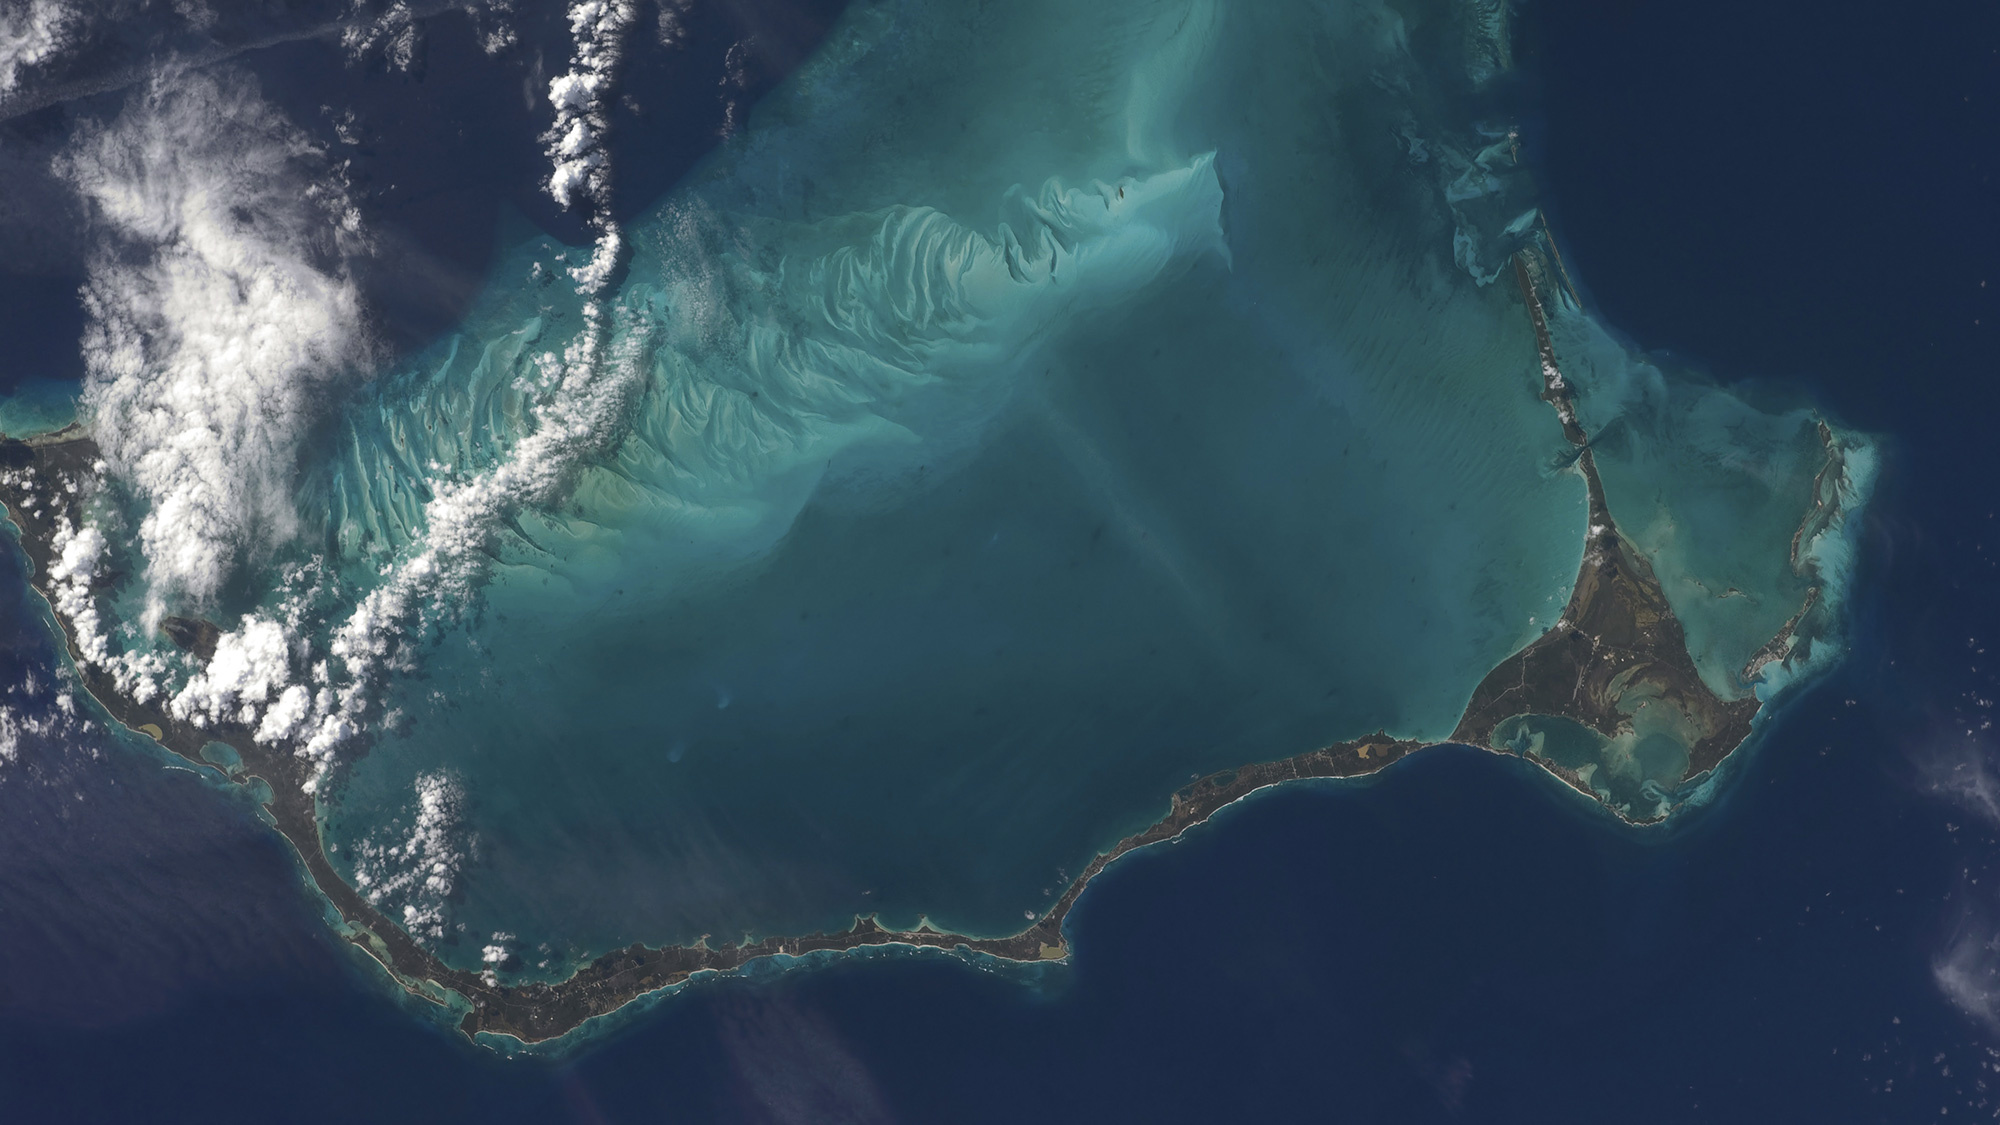 Bahamas lengthy narrow Eleuthera Island